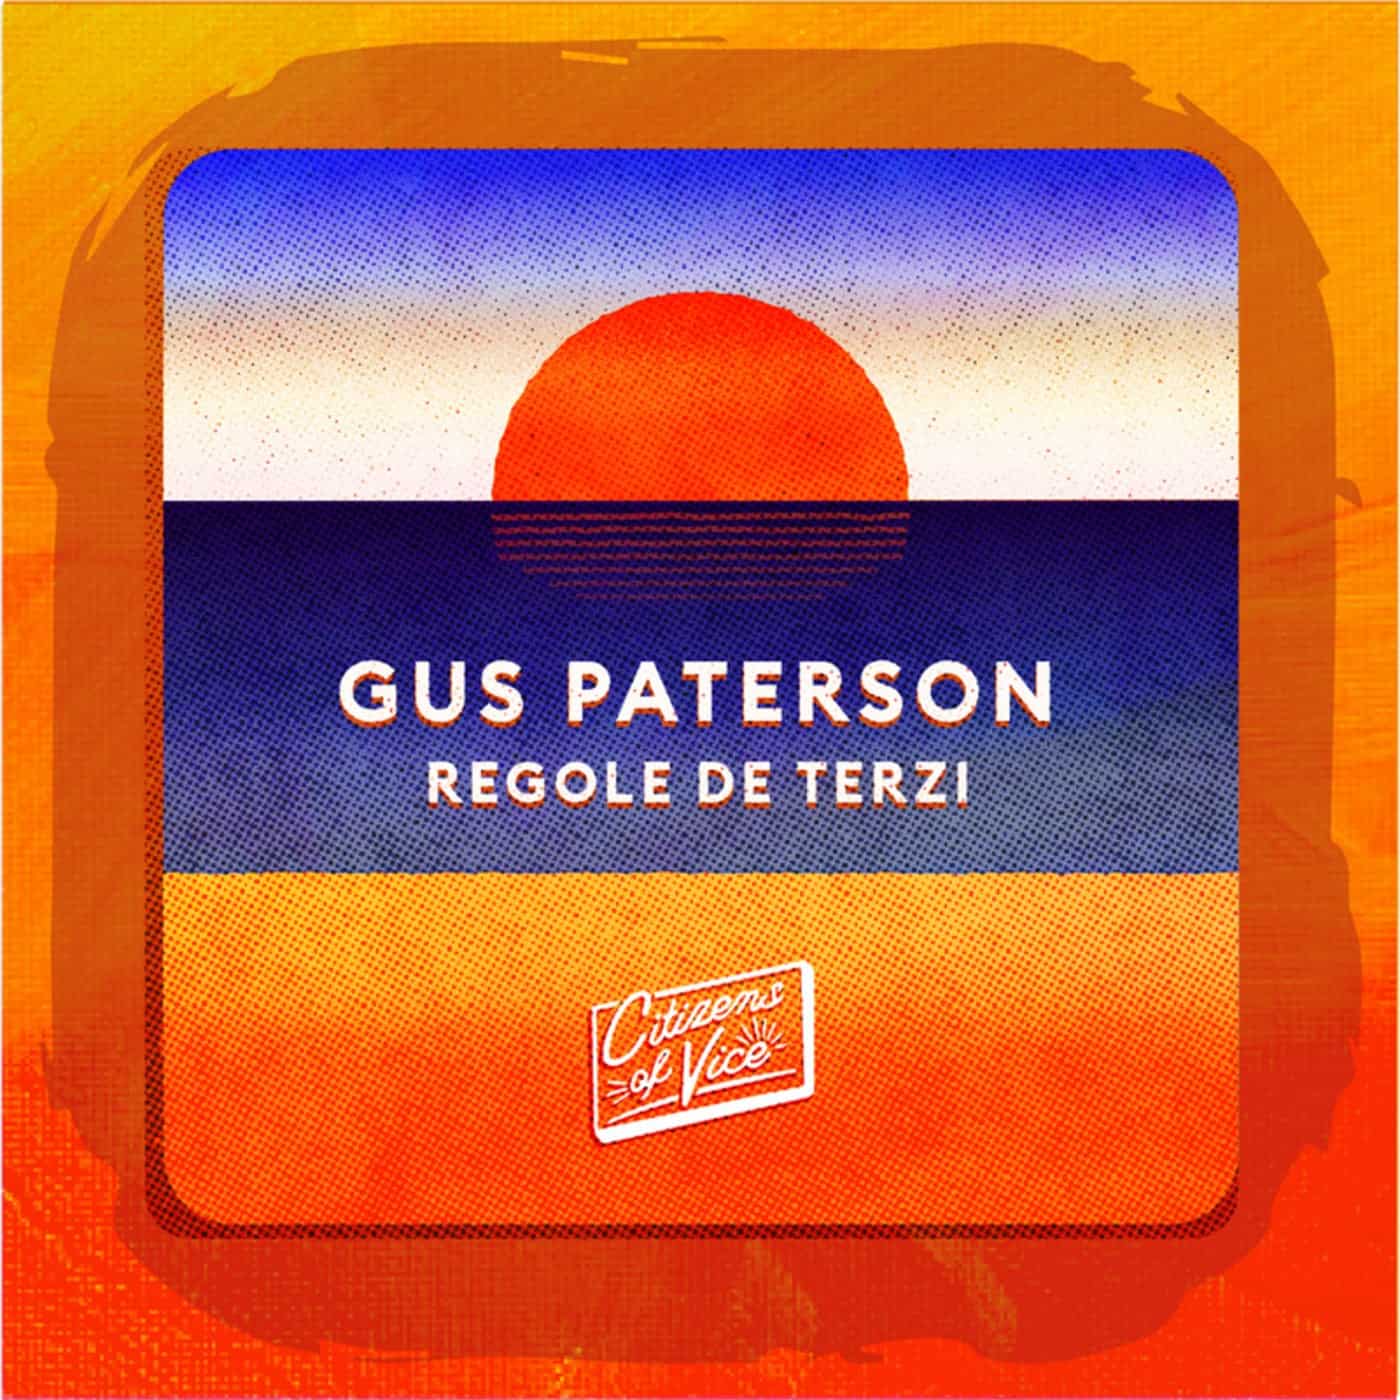 Download Gus Paterson - Regole Di Terzi on Electrobuzz